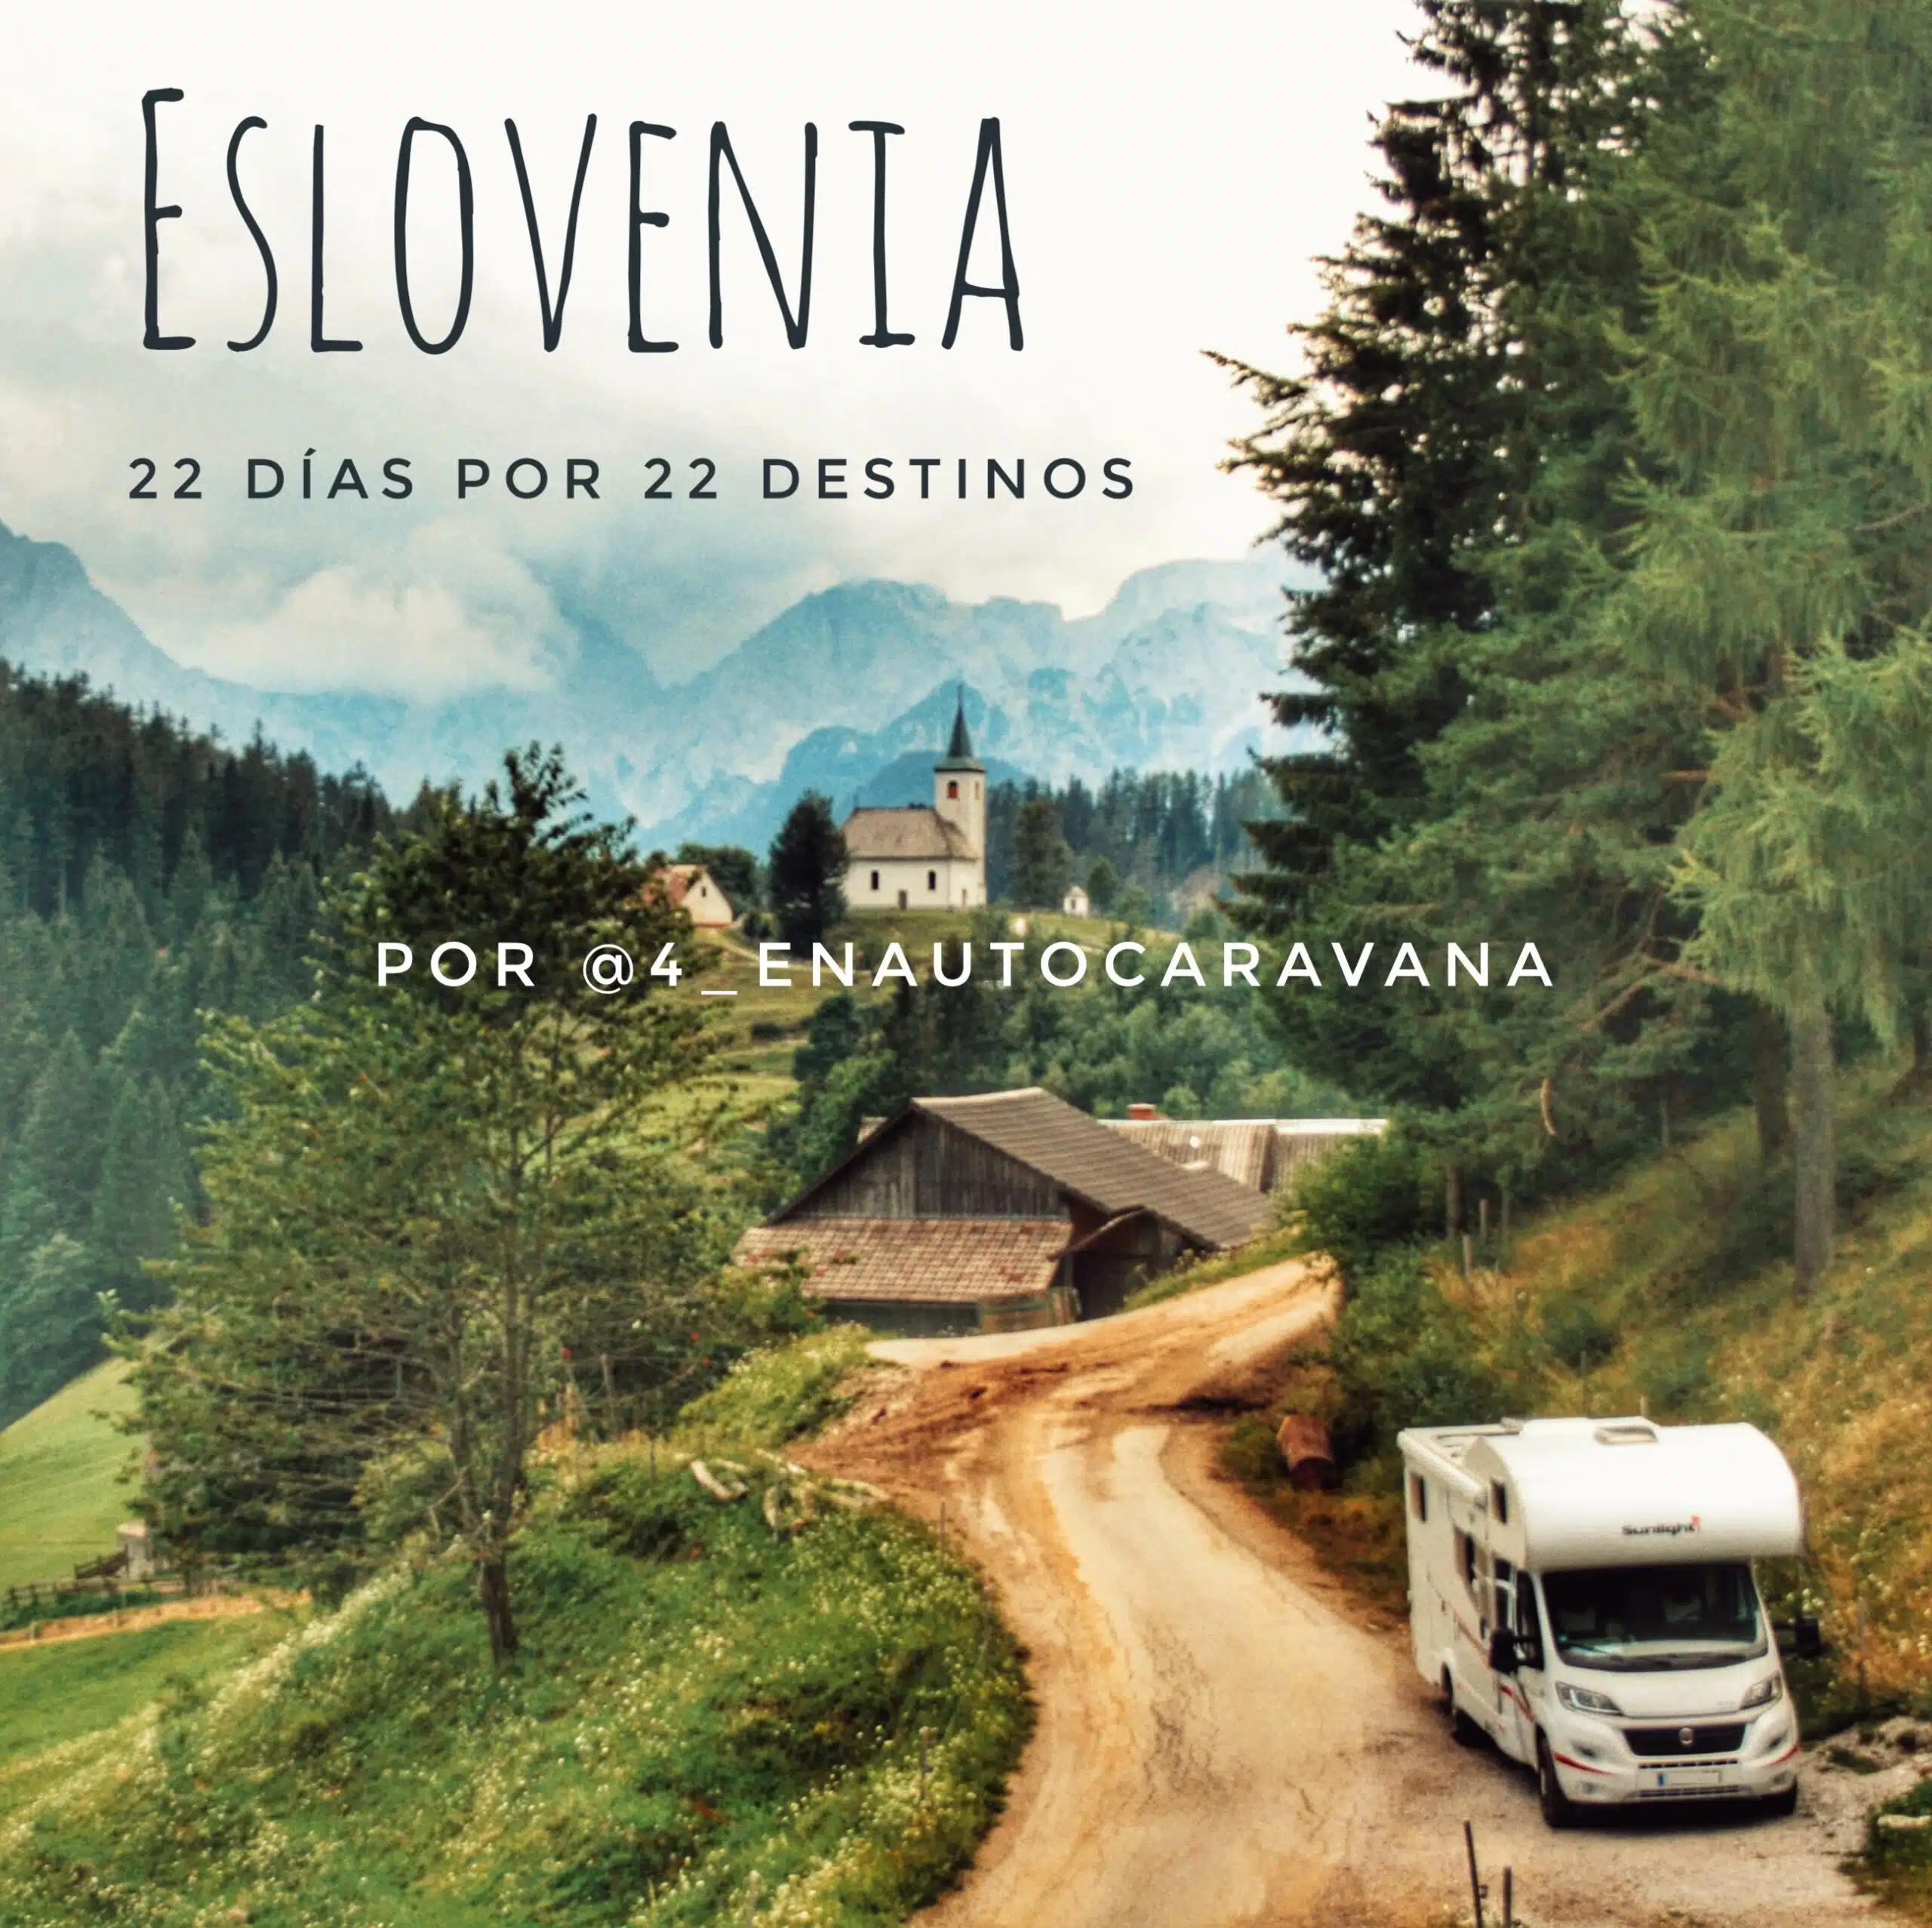 En ce moment, vous voyez la Slovénie en camping-car à travers 22 destinations par @ 4_enautocaravan